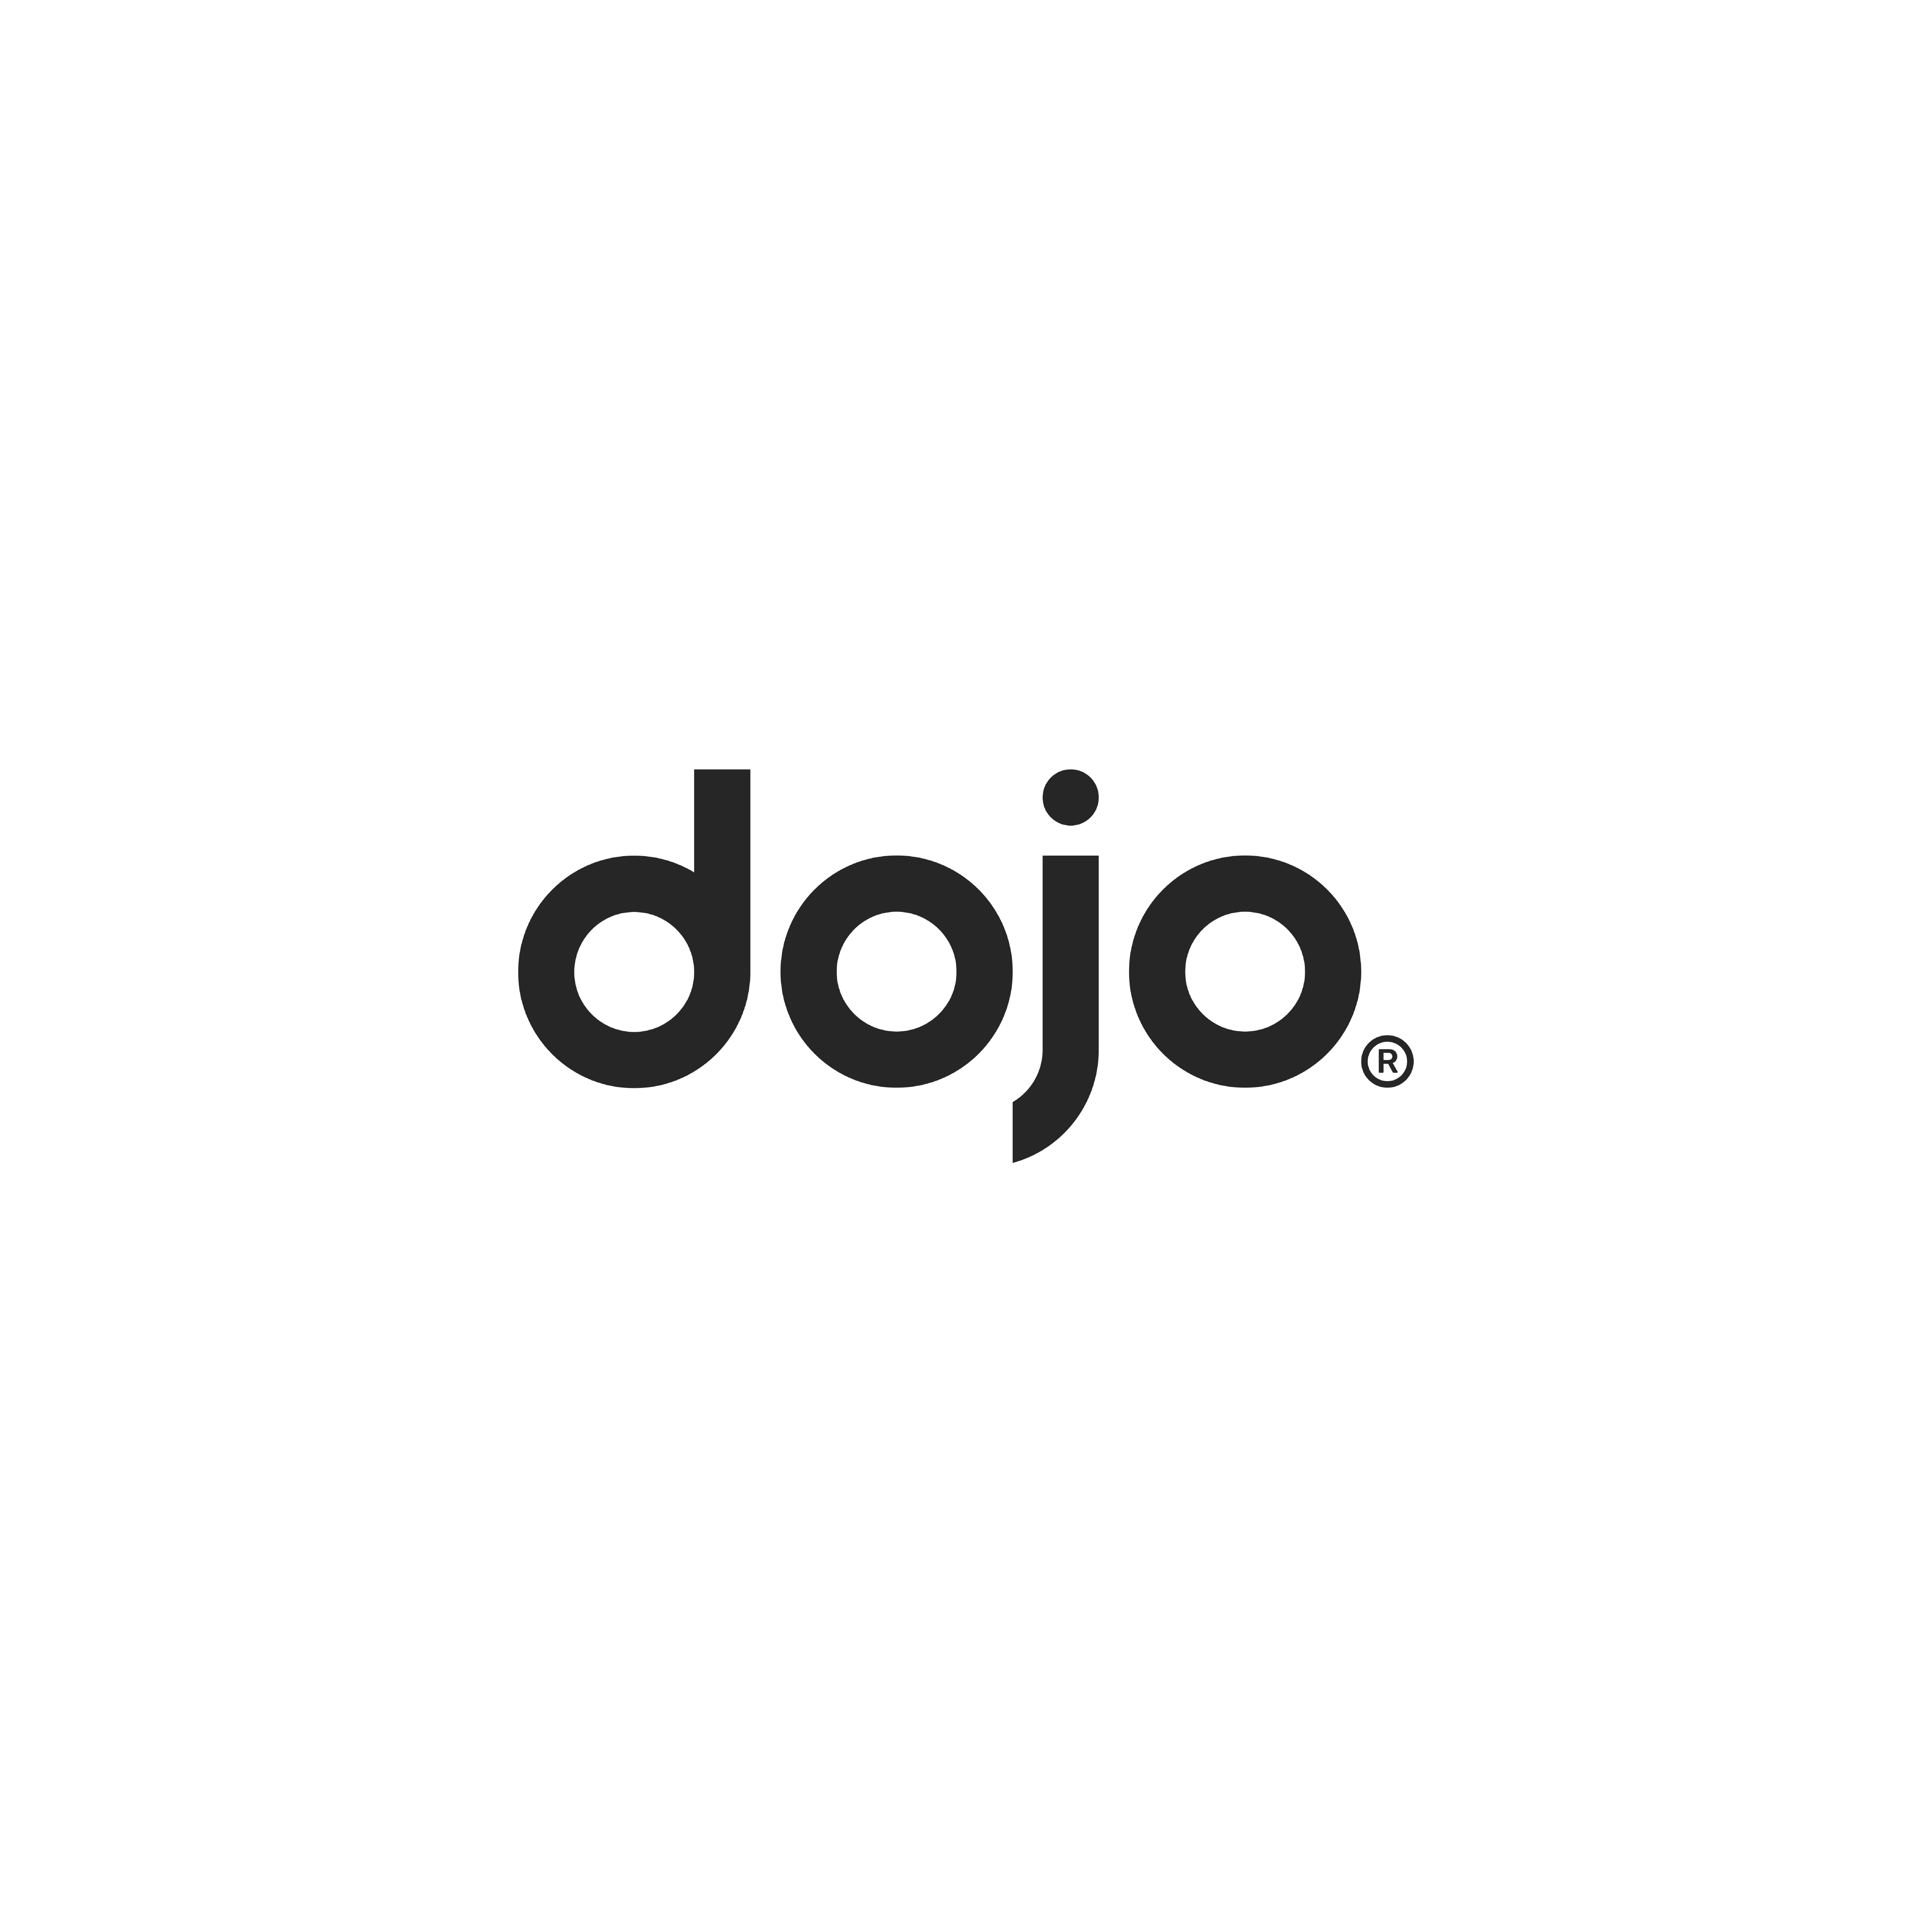 dojo (square)